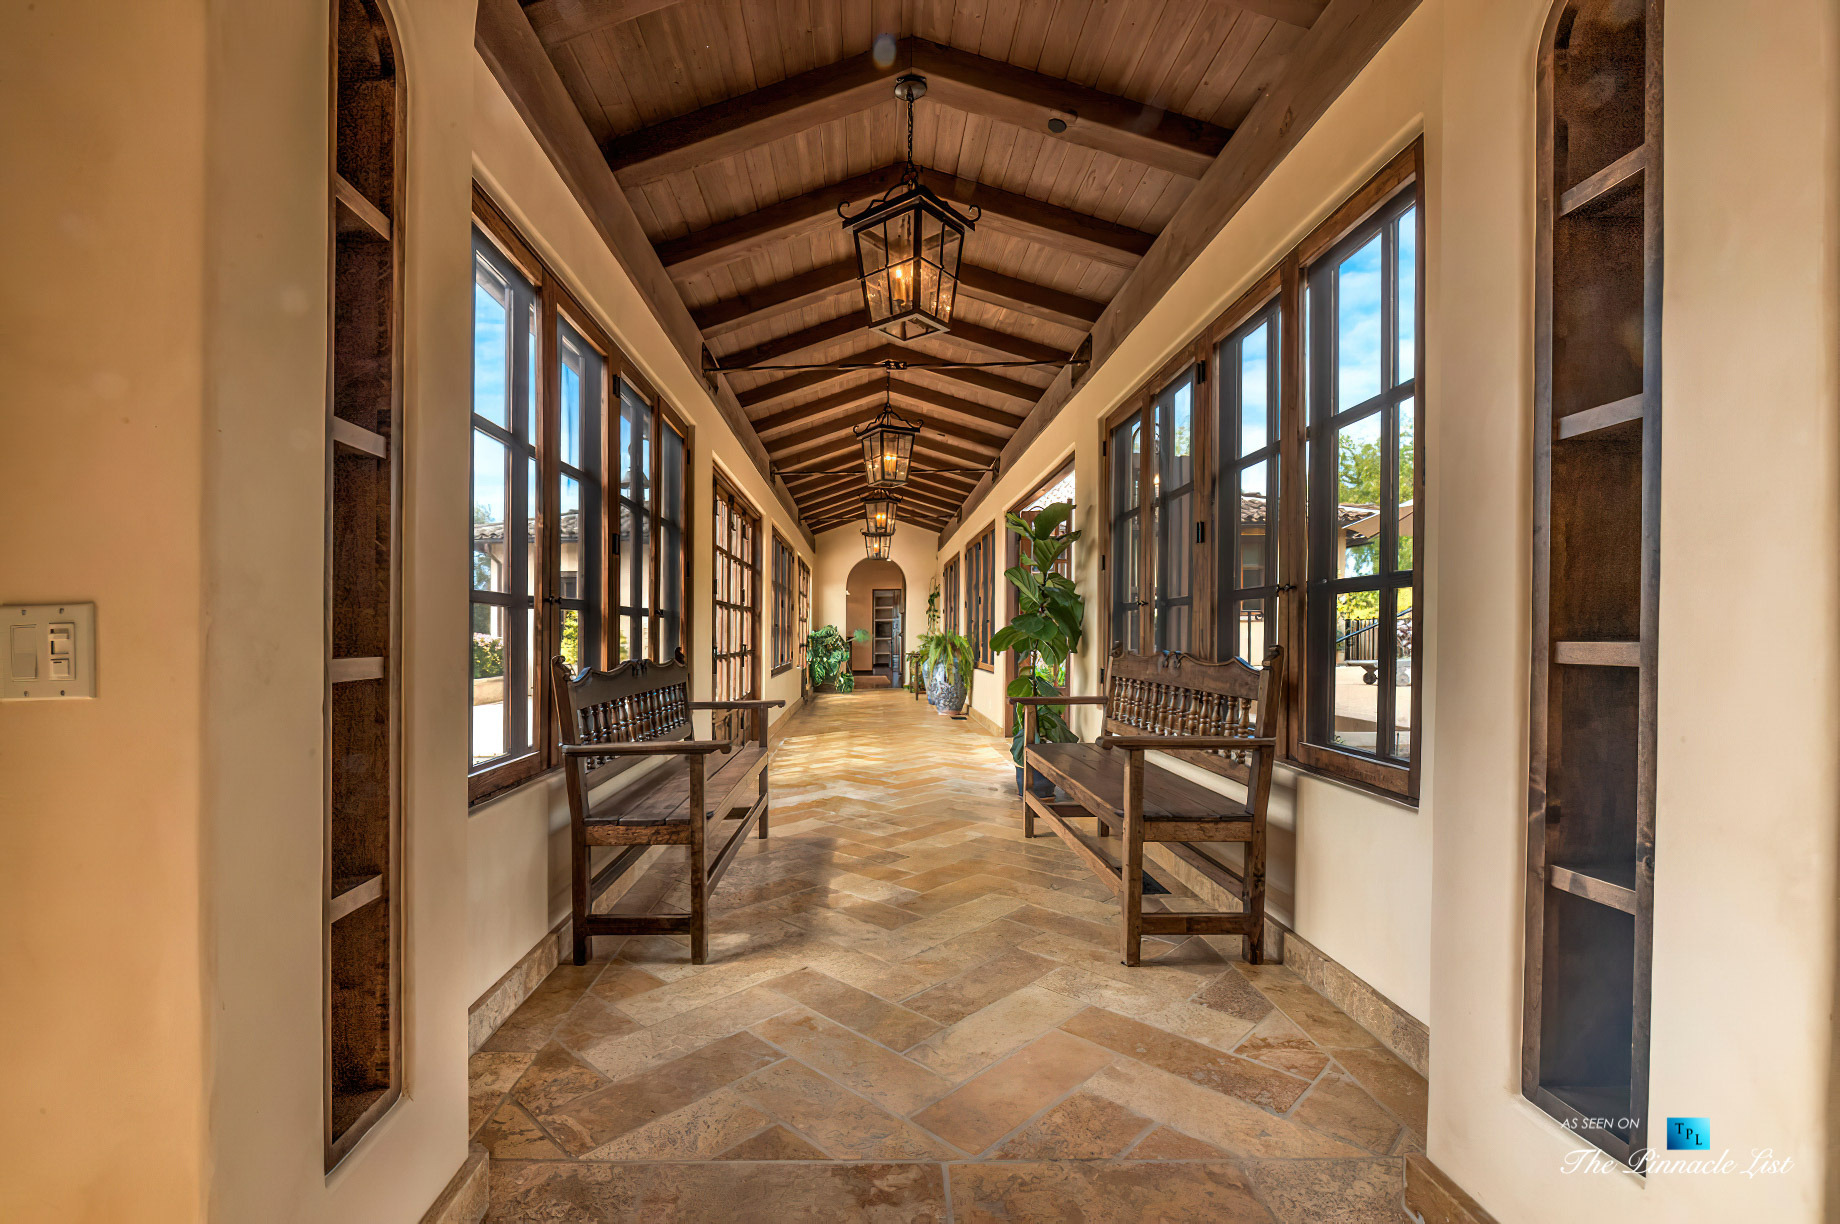 Spectacular 251 Acre Twin Oak Ranch – 2667 Via De Los Ranchos, Los Olivos, CA, USA – Italian Villa Residence Interior Hallway